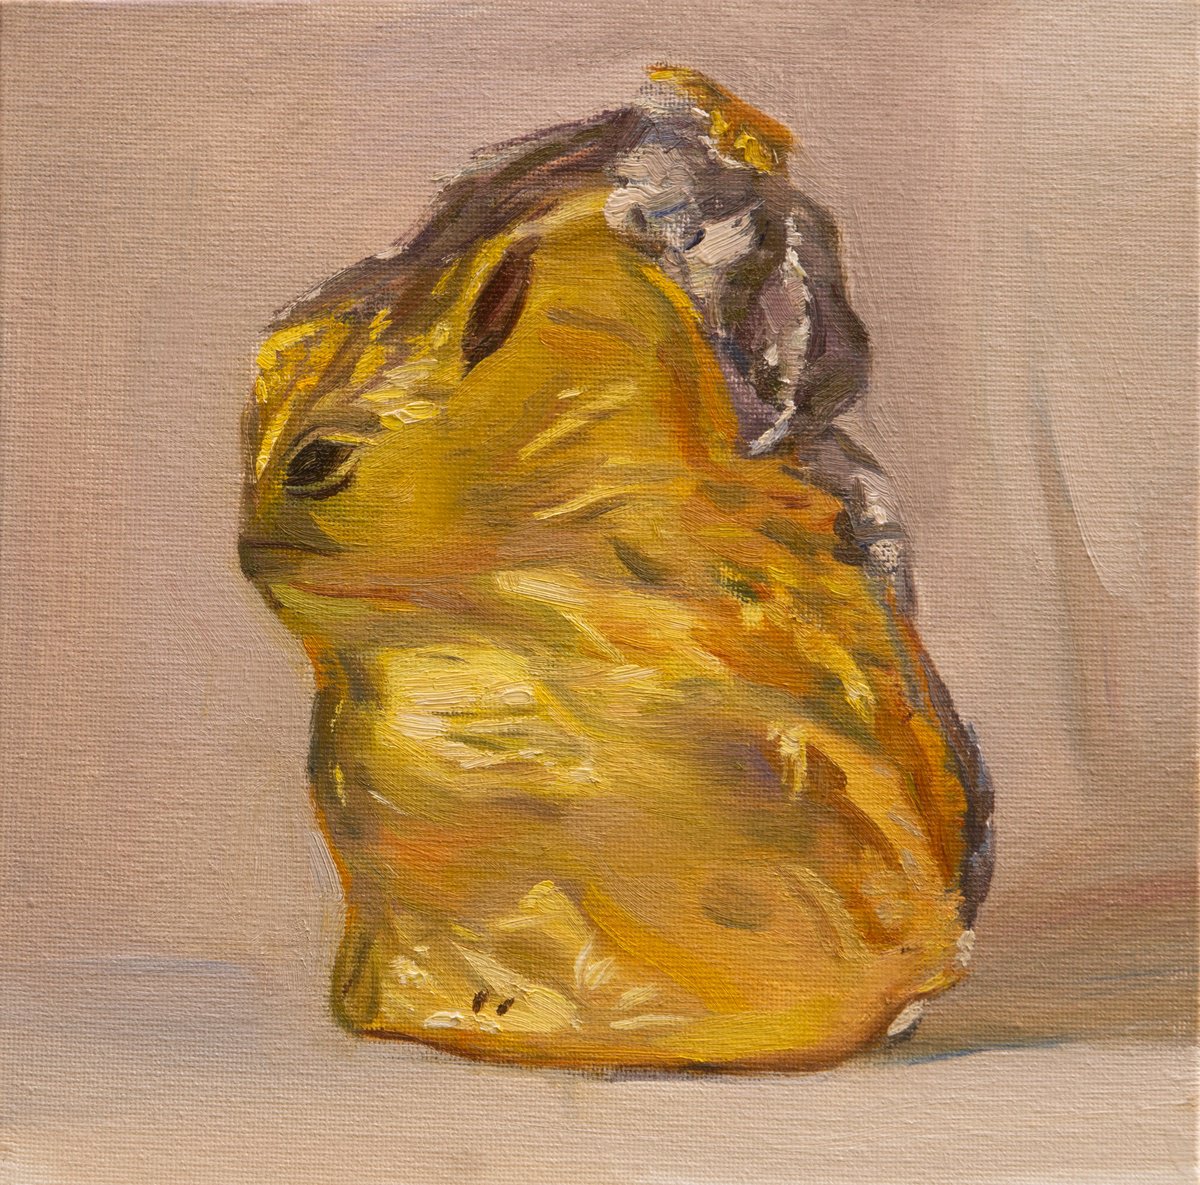 Gold bunny4 by Anastasia Borodina